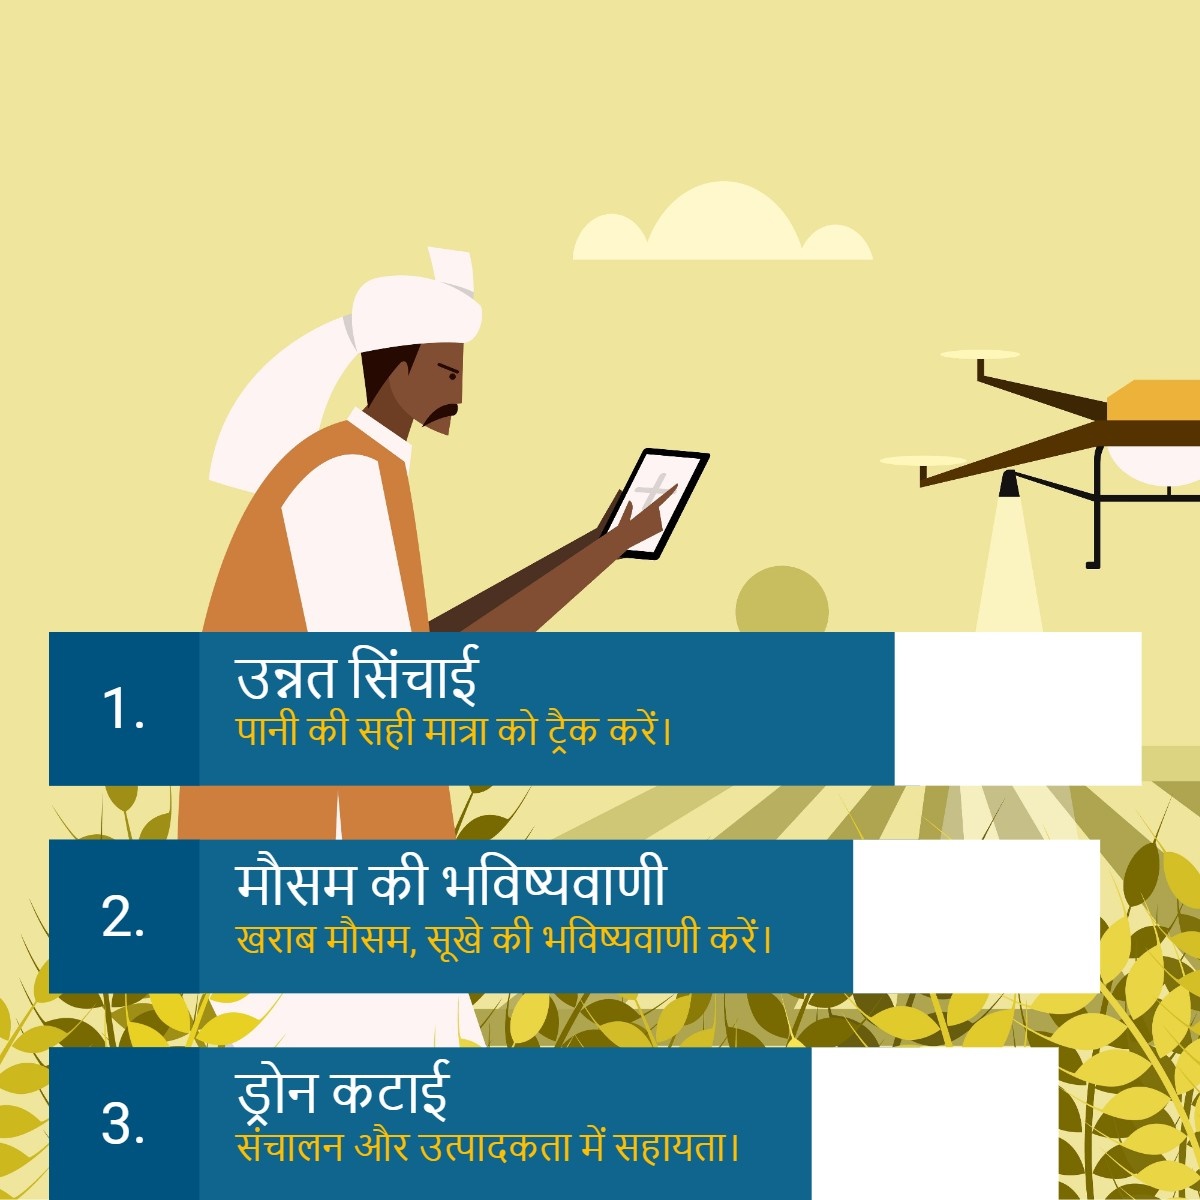 👉 5G भारतीय कृषि में कैसे मदद कर सकता है?
बजट 2023 में भारतीय कृषि के लिए डिजिटल सुधार।

#india #indianfarmer #indianagriculture #india